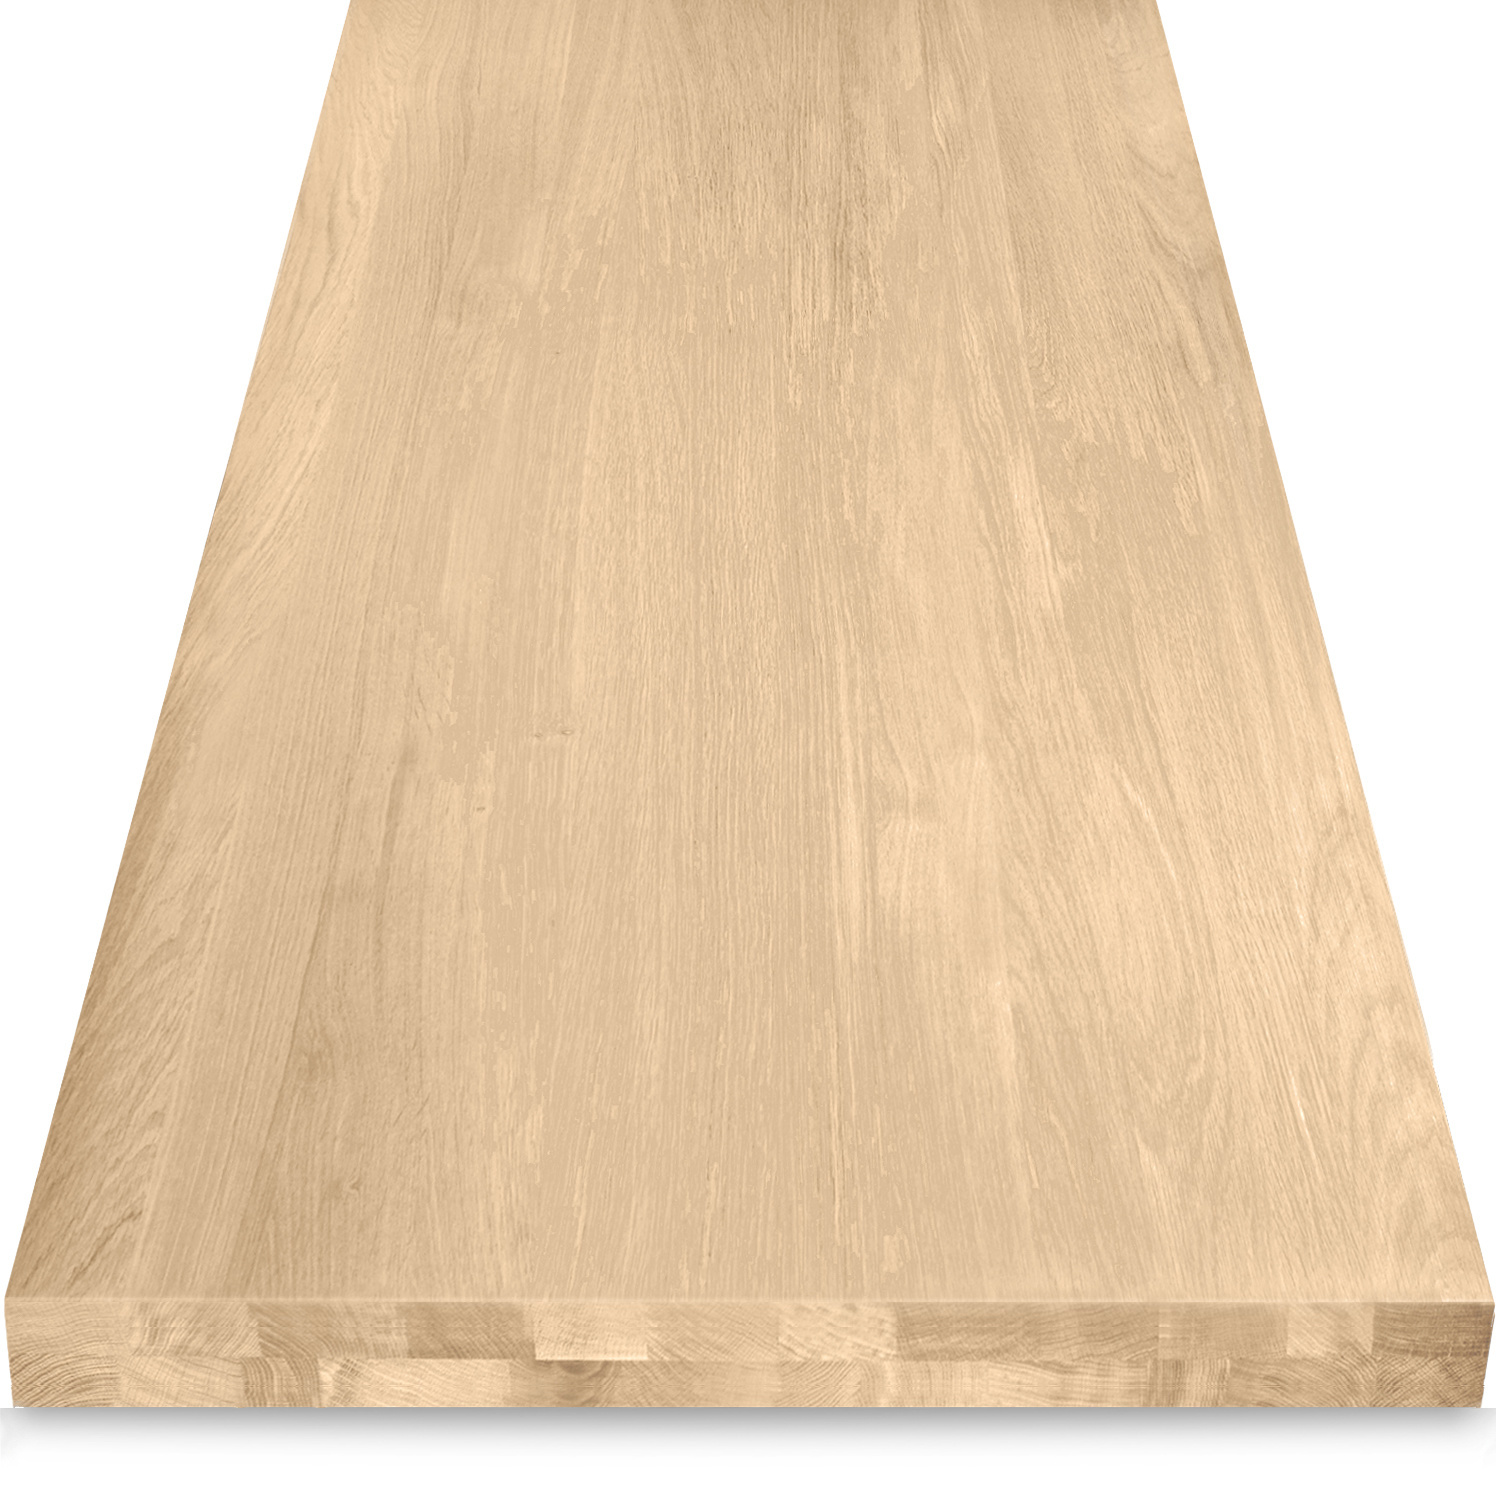  Tischplatte Eiche nach Maß - Aufgedoppelt - 6 cm dick (2-lagig) - Eichenholz A-Qualität - Eiche Tischplatte massiv - verleimt & künstlich getrocknet (HF 8-12%) - 50-120x50-350 cm